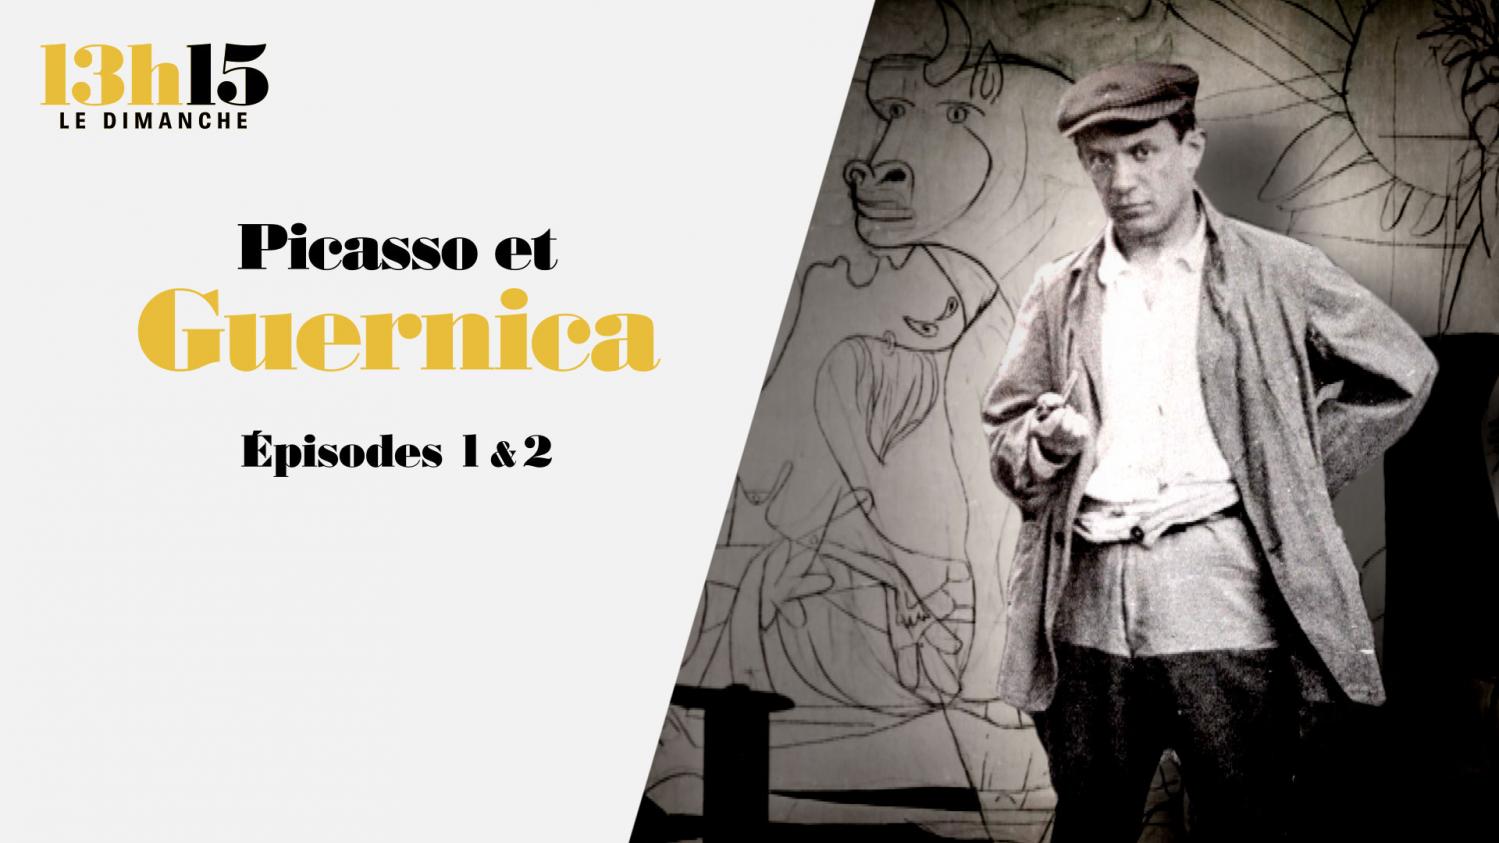 "13h15 le dimanche". Picasso et "Guernica" > Episodes 1 & 2 - France 2 - 23 mai 2021